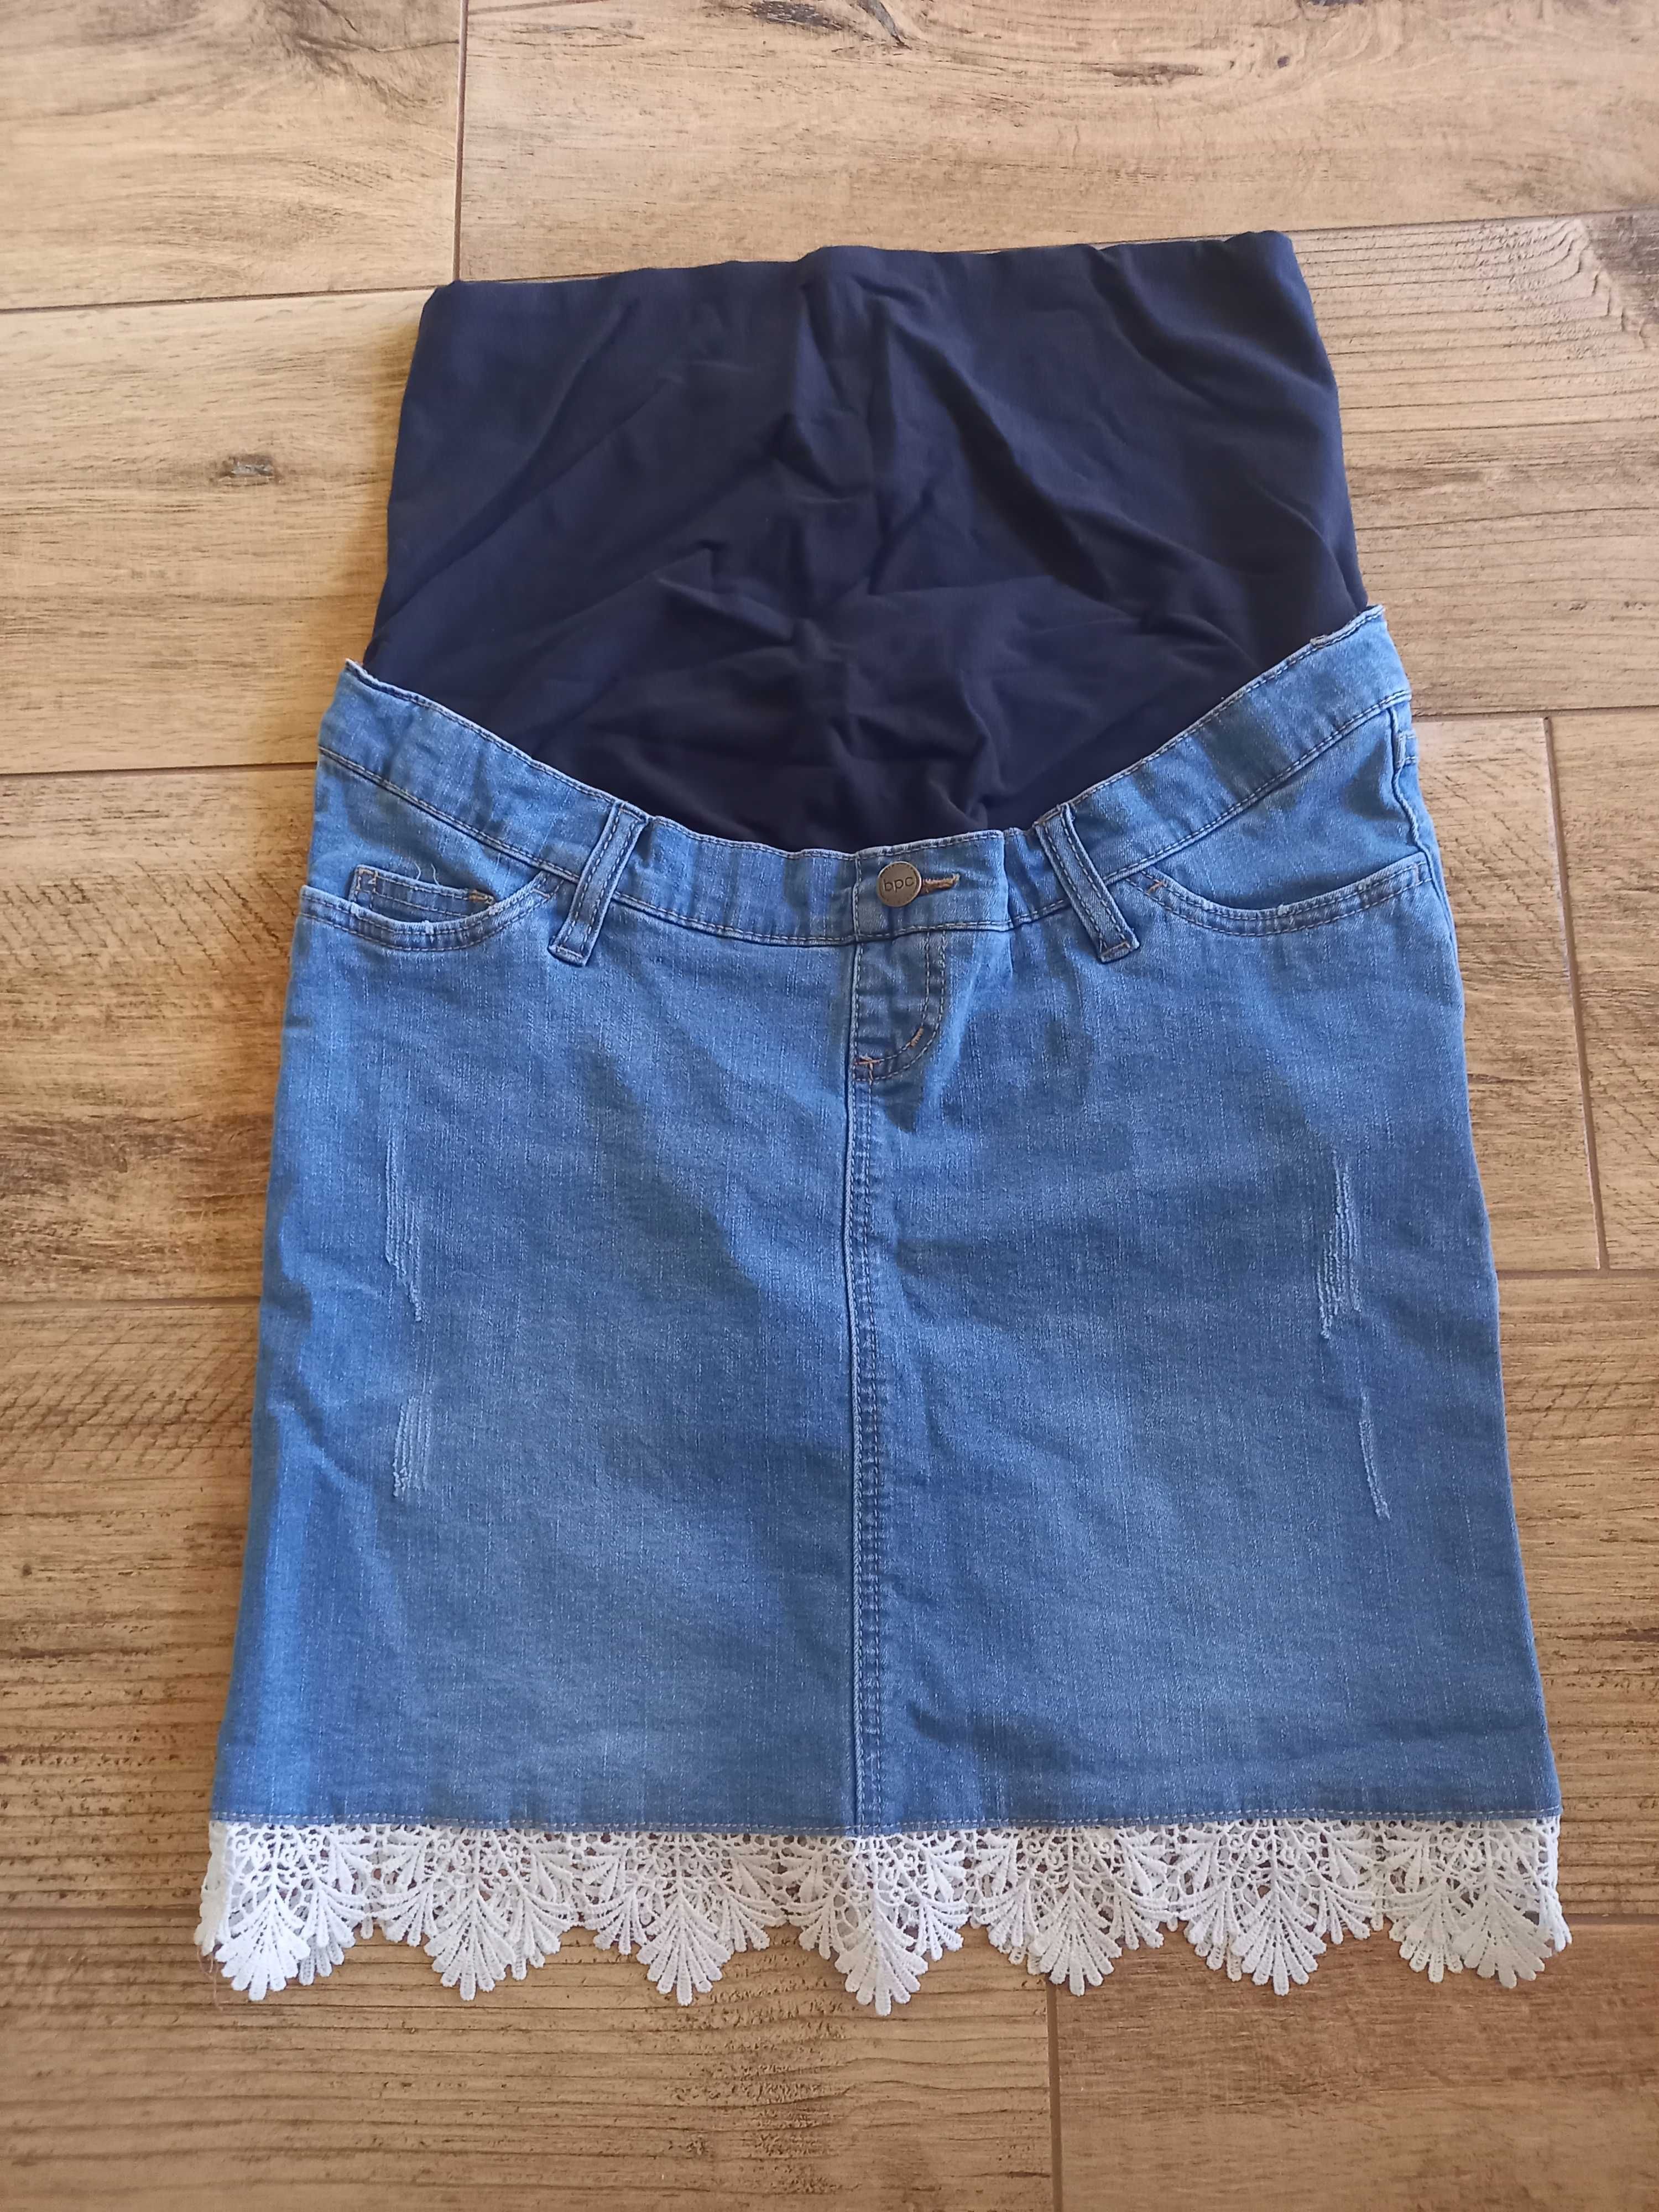 Nowa spódnica jeansowa spódniczka ciążowa rozmiar S 36